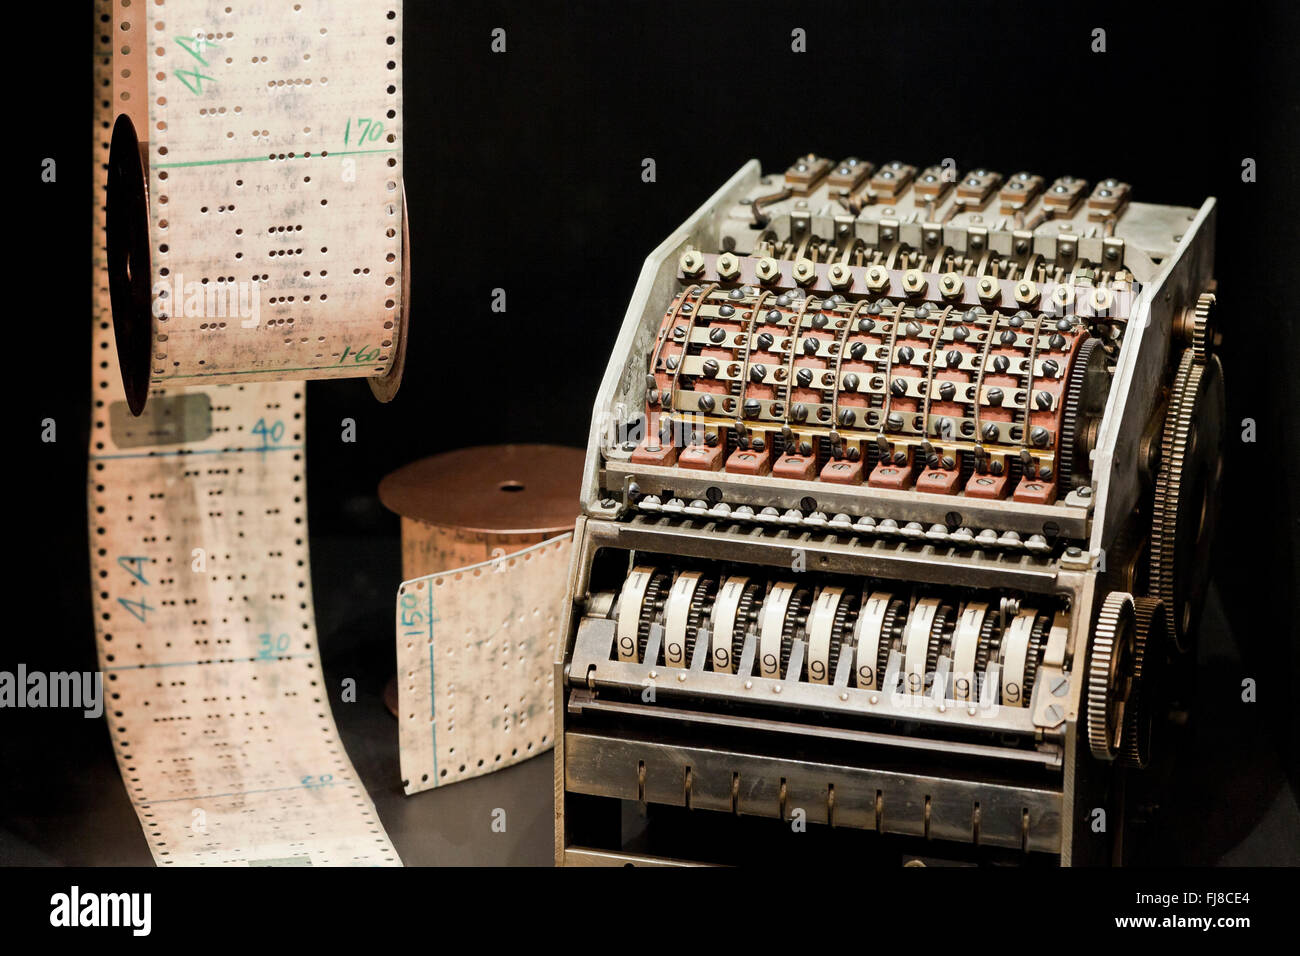 IBM automatische Sequenz gesteuerten Rechner (Mark I), ca. 1944 - US Patent und Trademark Office - USA Stockfoto